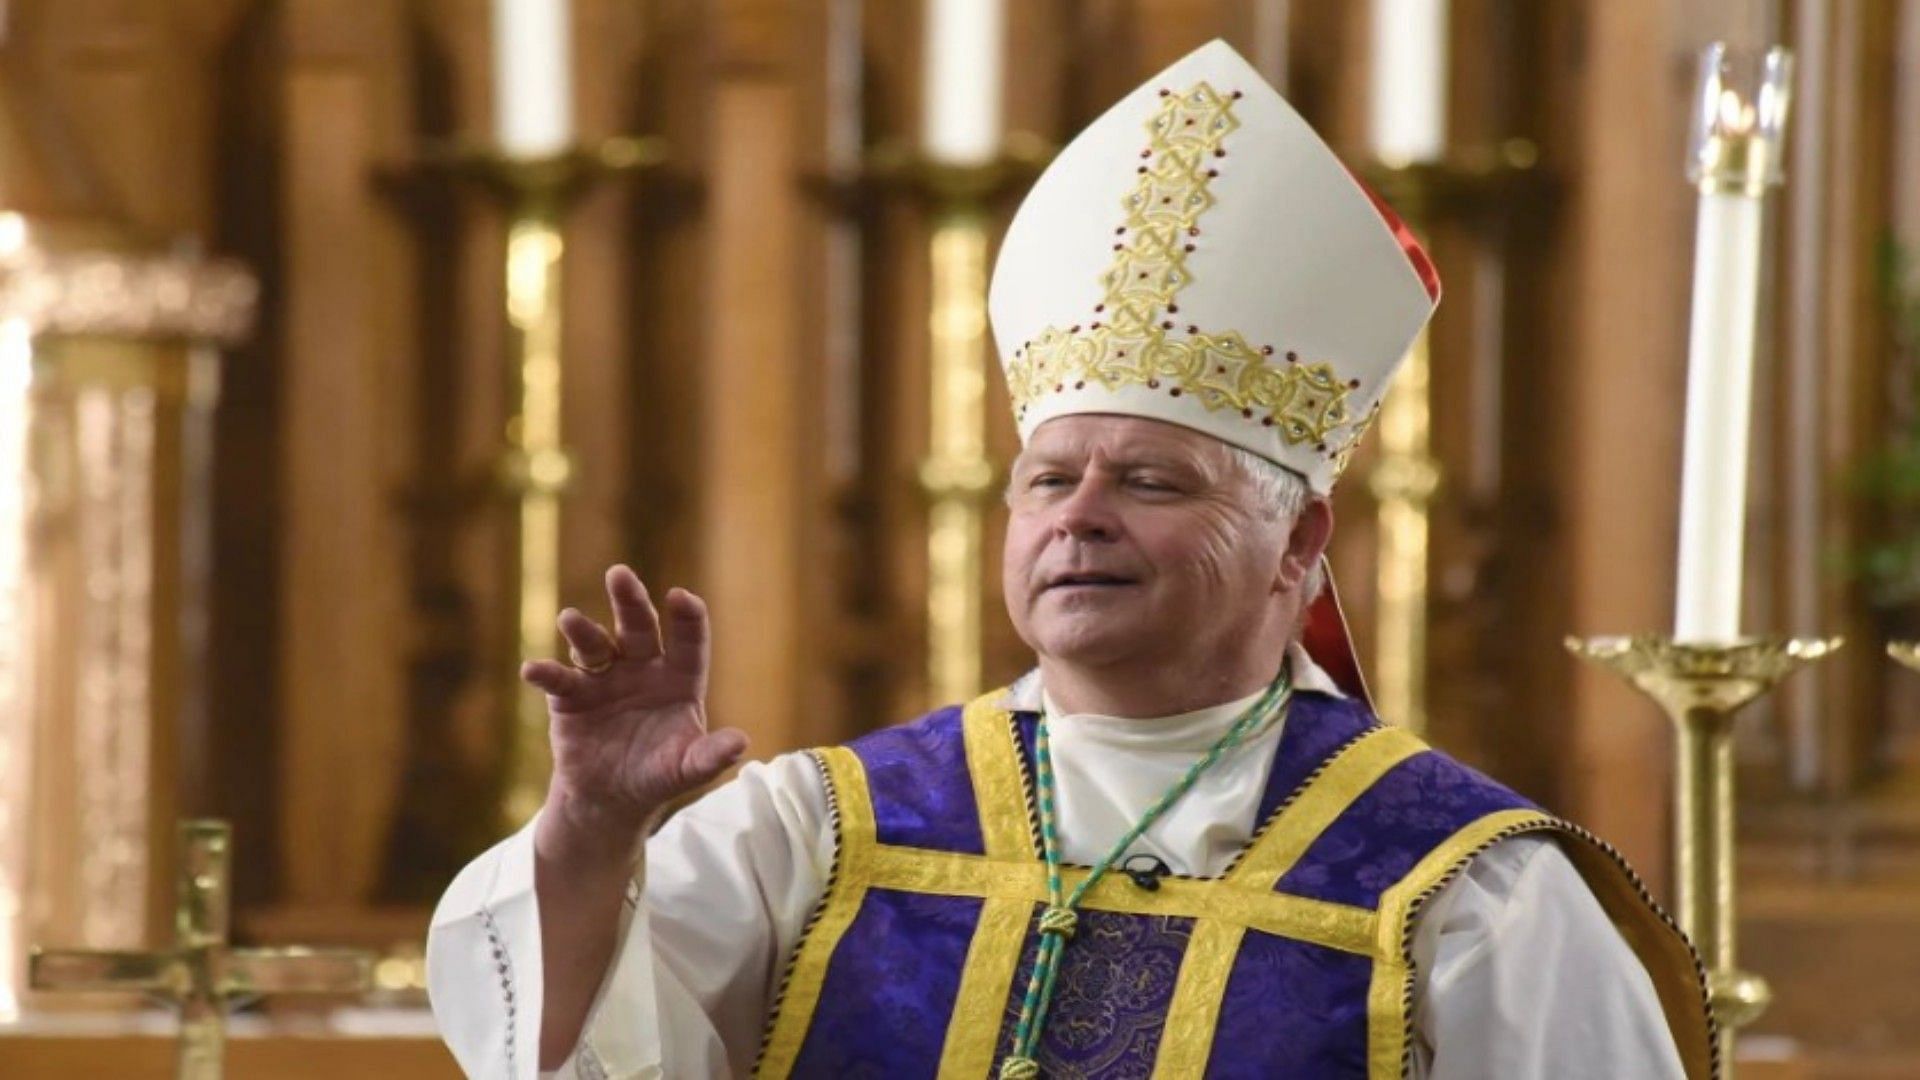 Bishop Richard Stika (Image via Chaos in Vegas/Twitter)